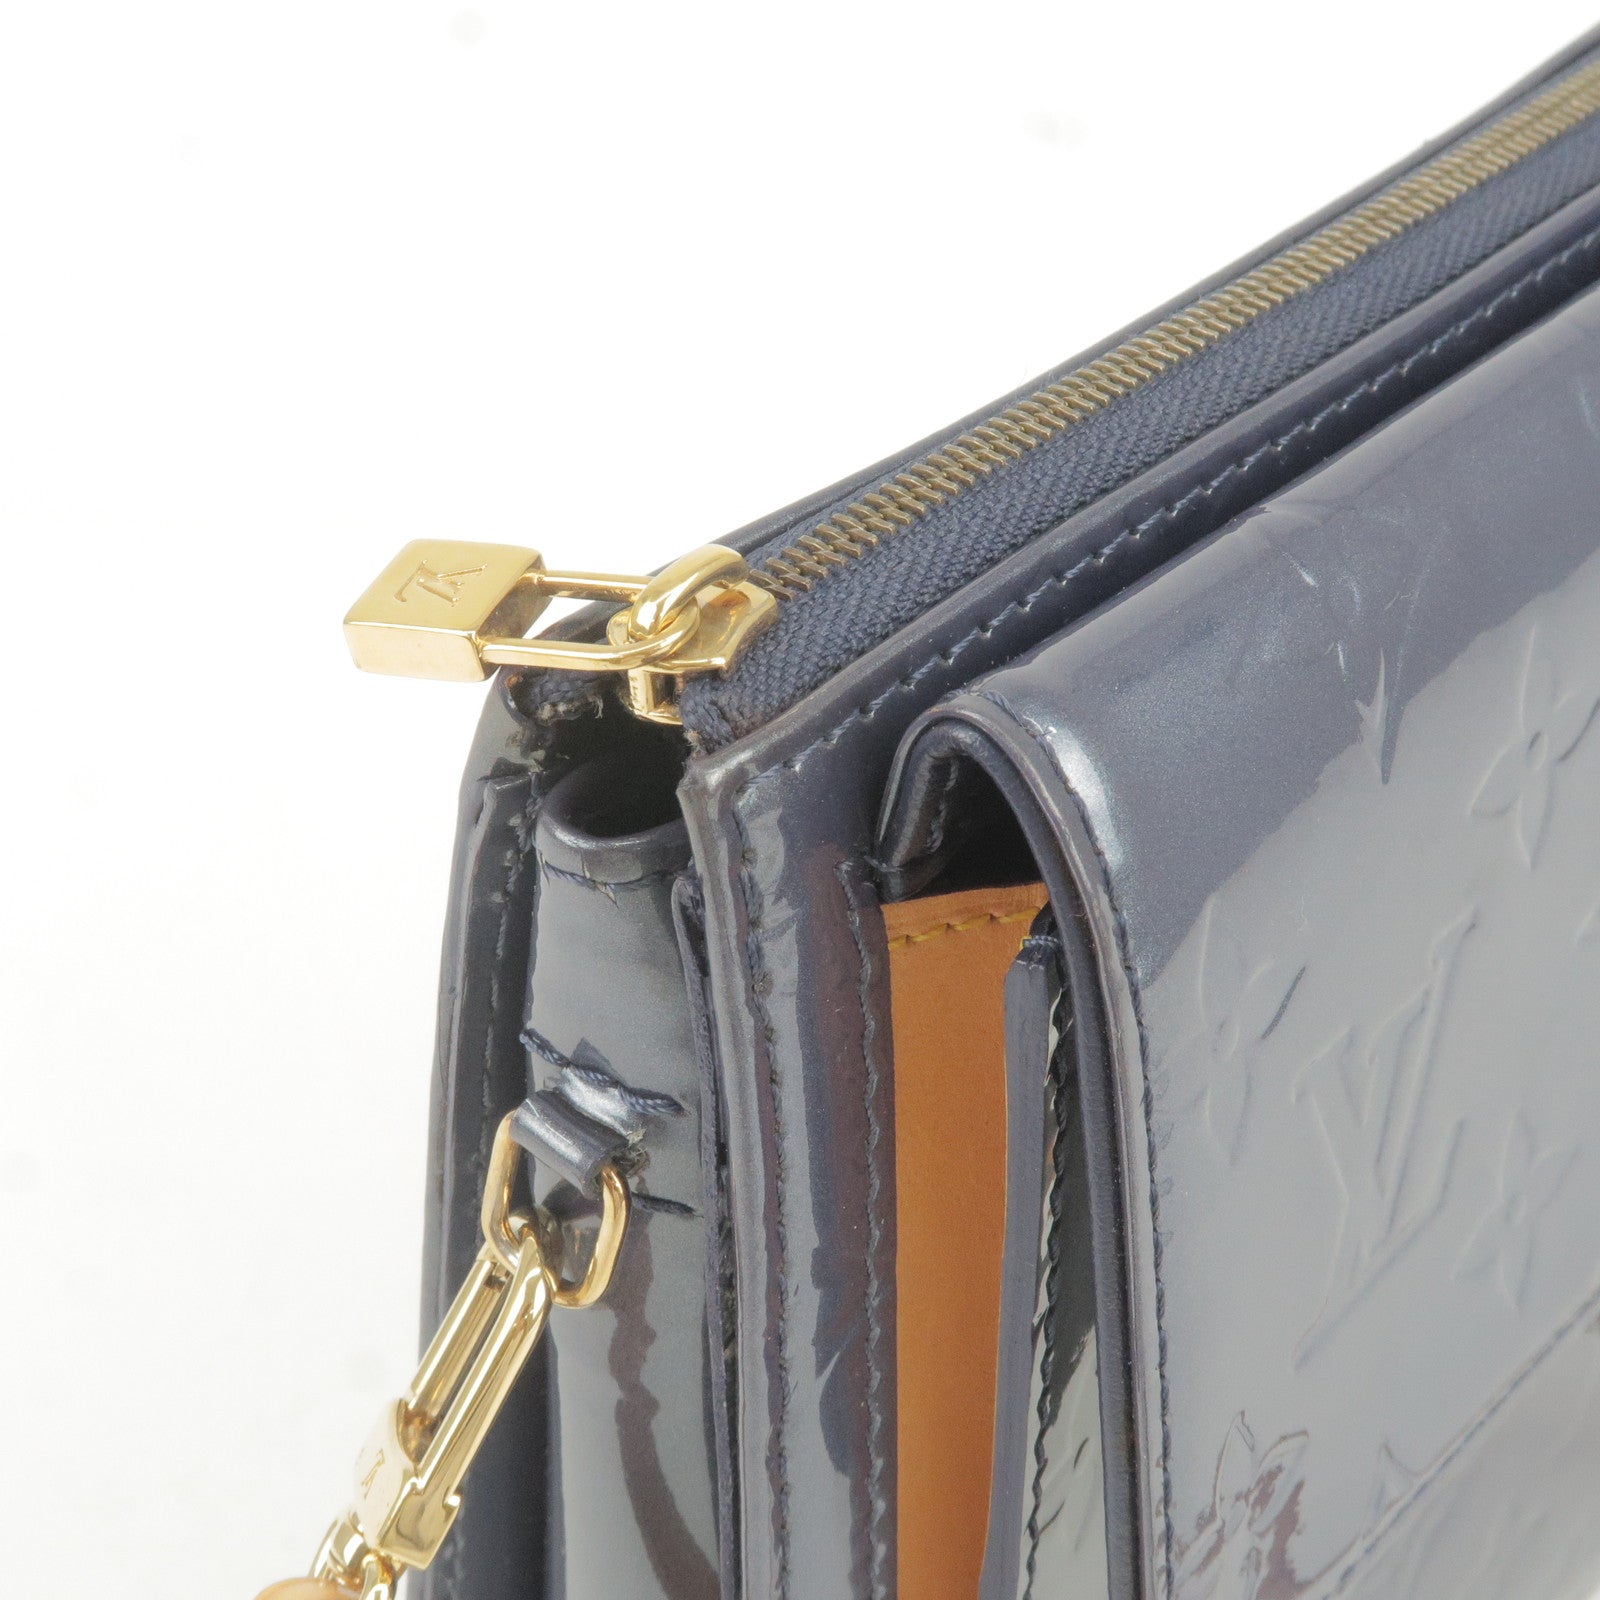 Louis Vuitton Mott Shoulder Bag Silver Leather Monogram Vernis